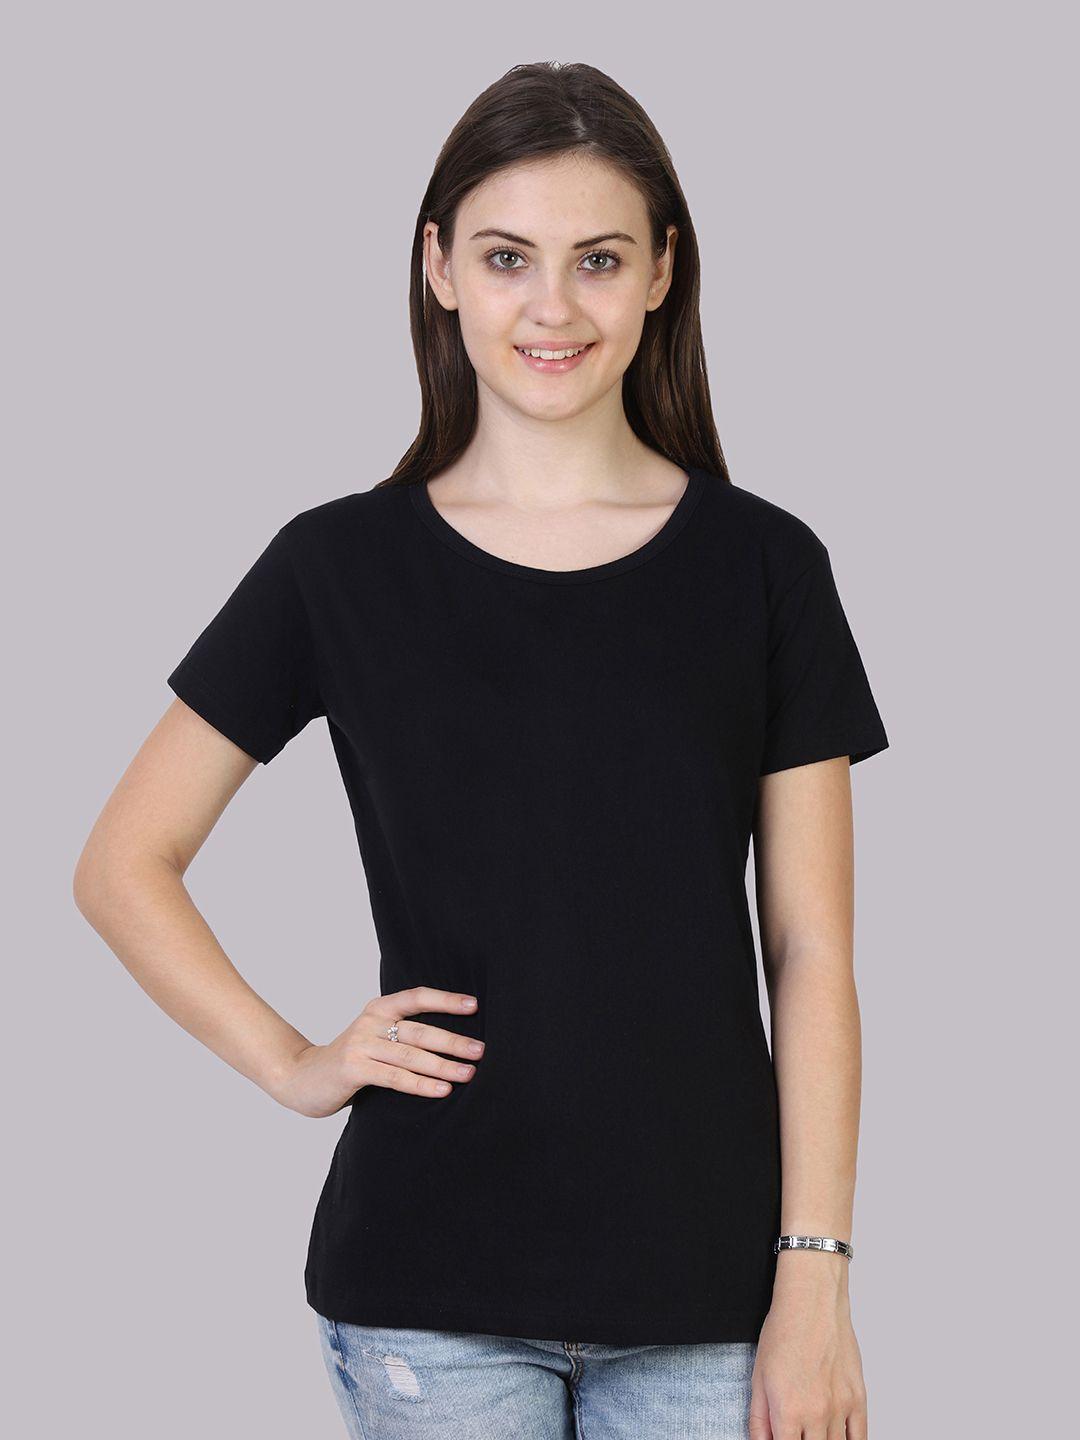 fleximaa-women-black-running-t-shirt